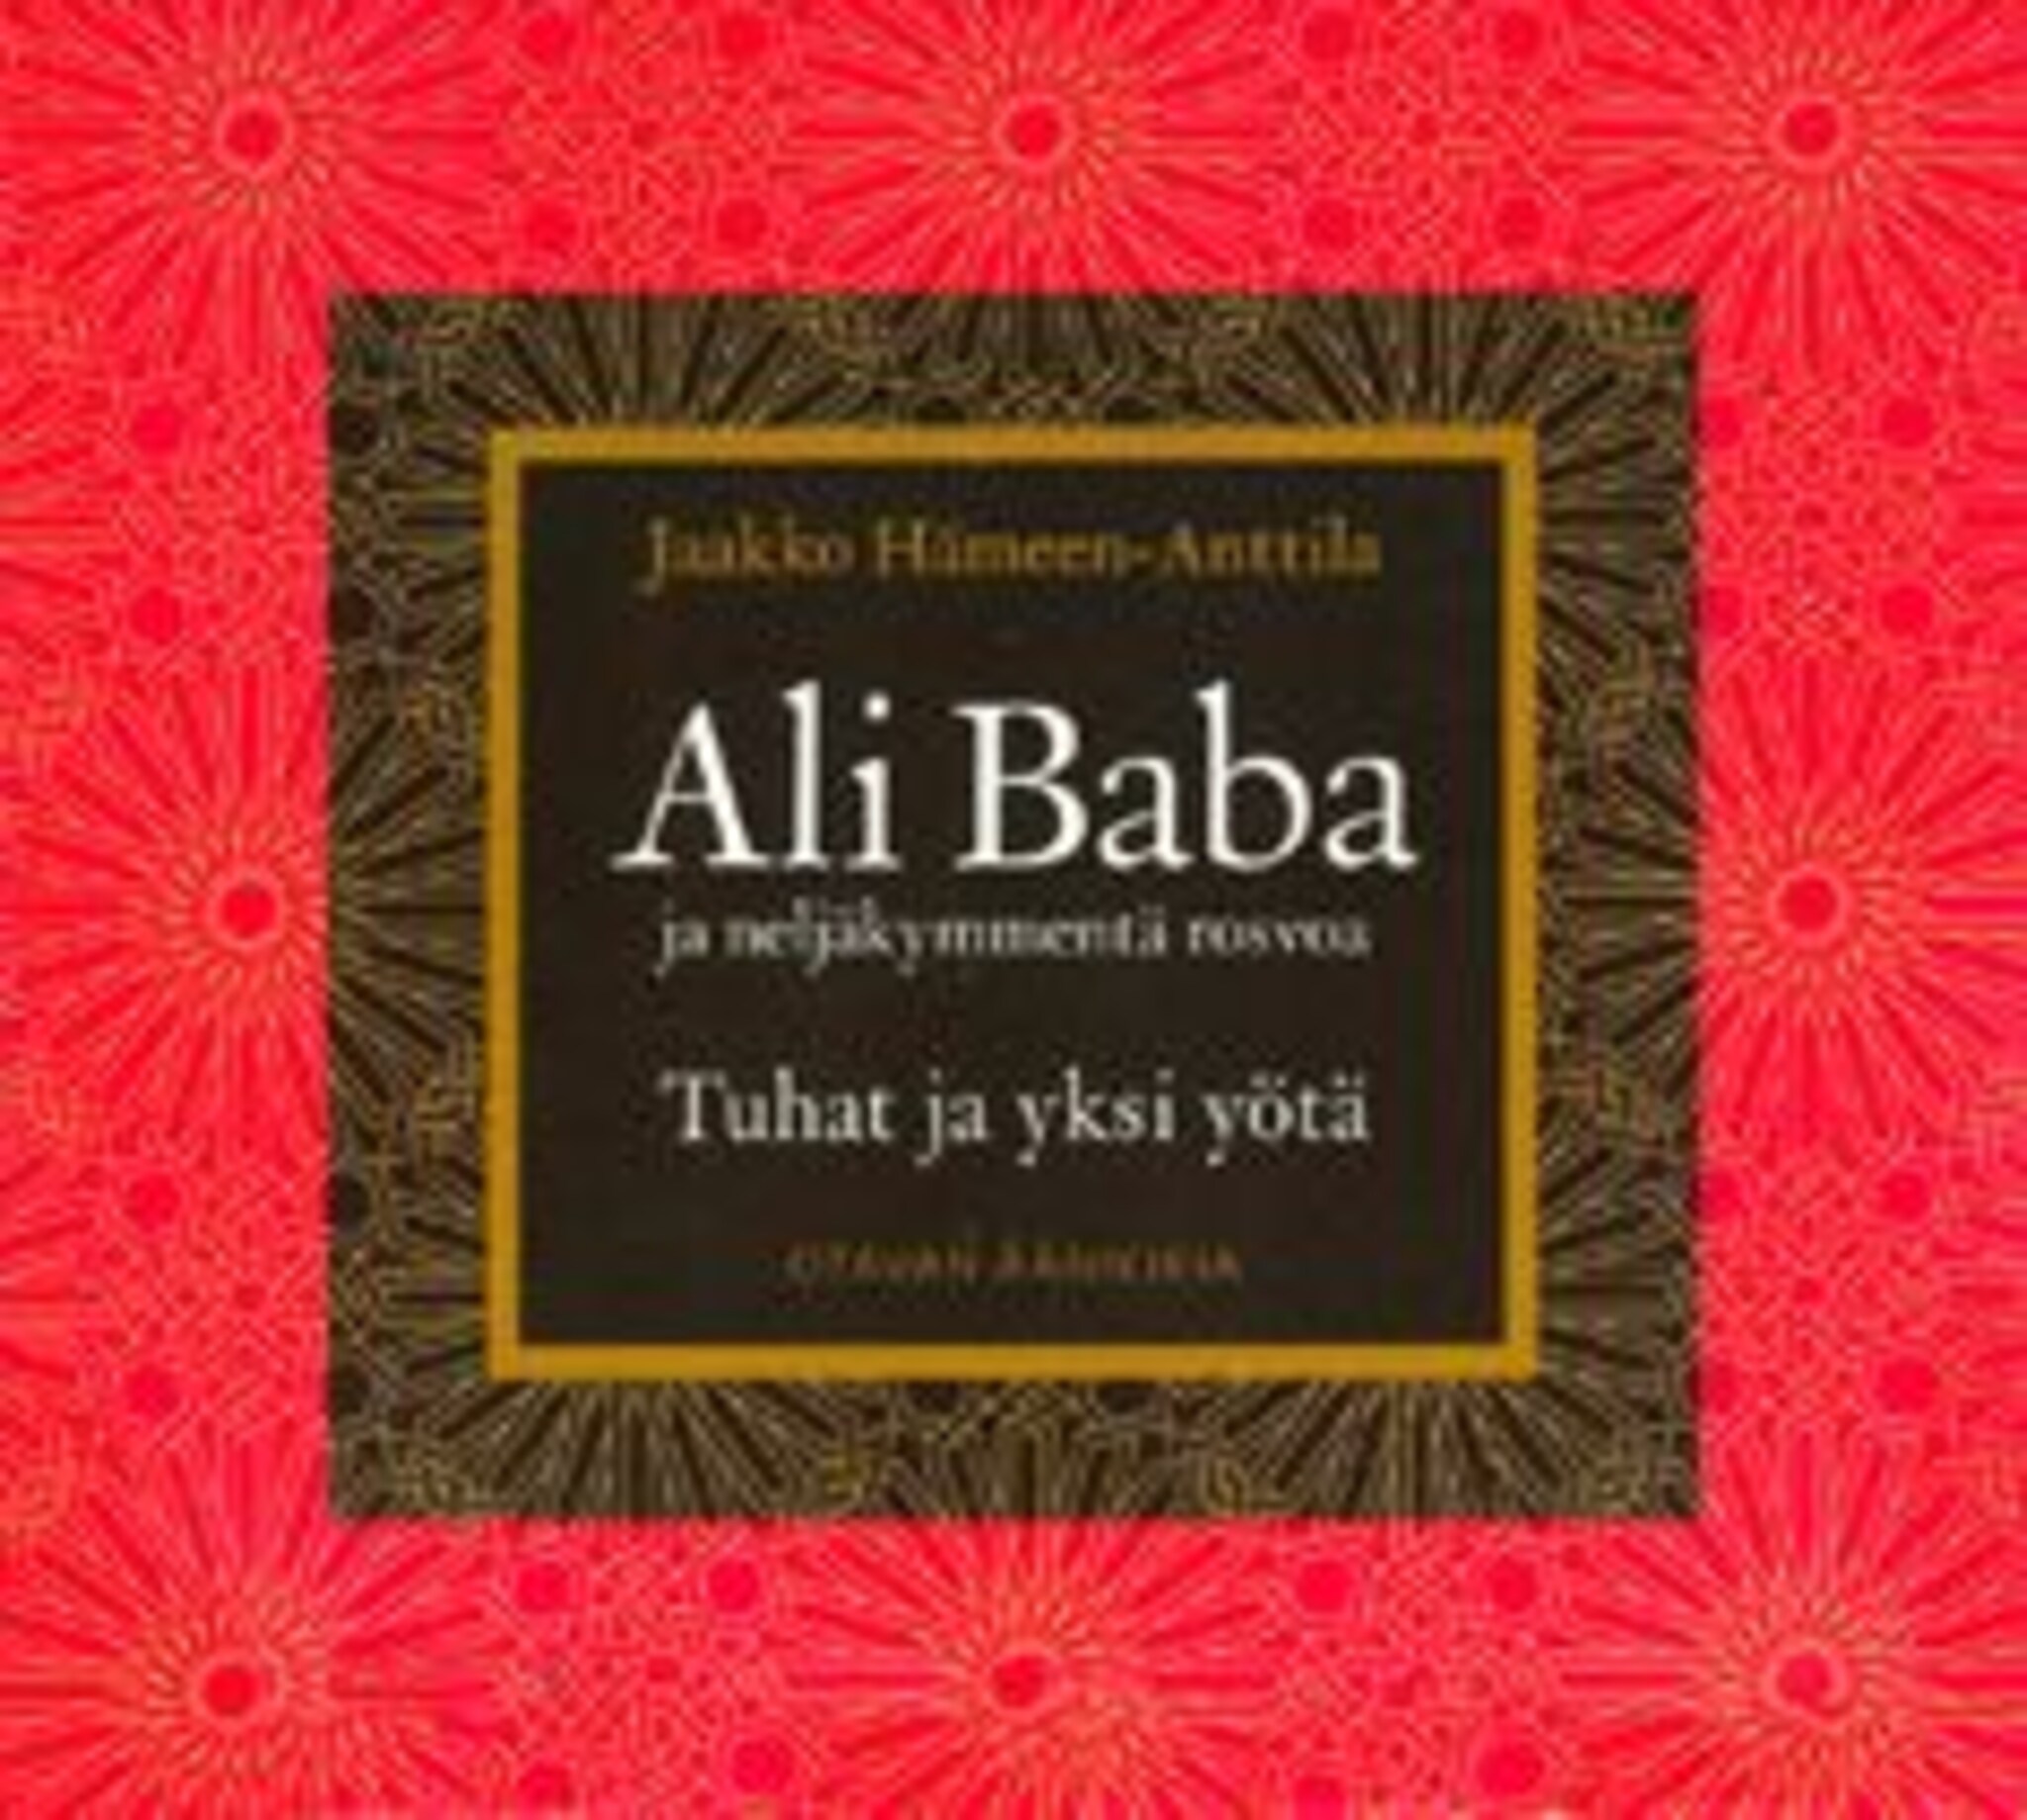 Ali Baba ja neljäkymmentä rosvoa ilmaiseksi